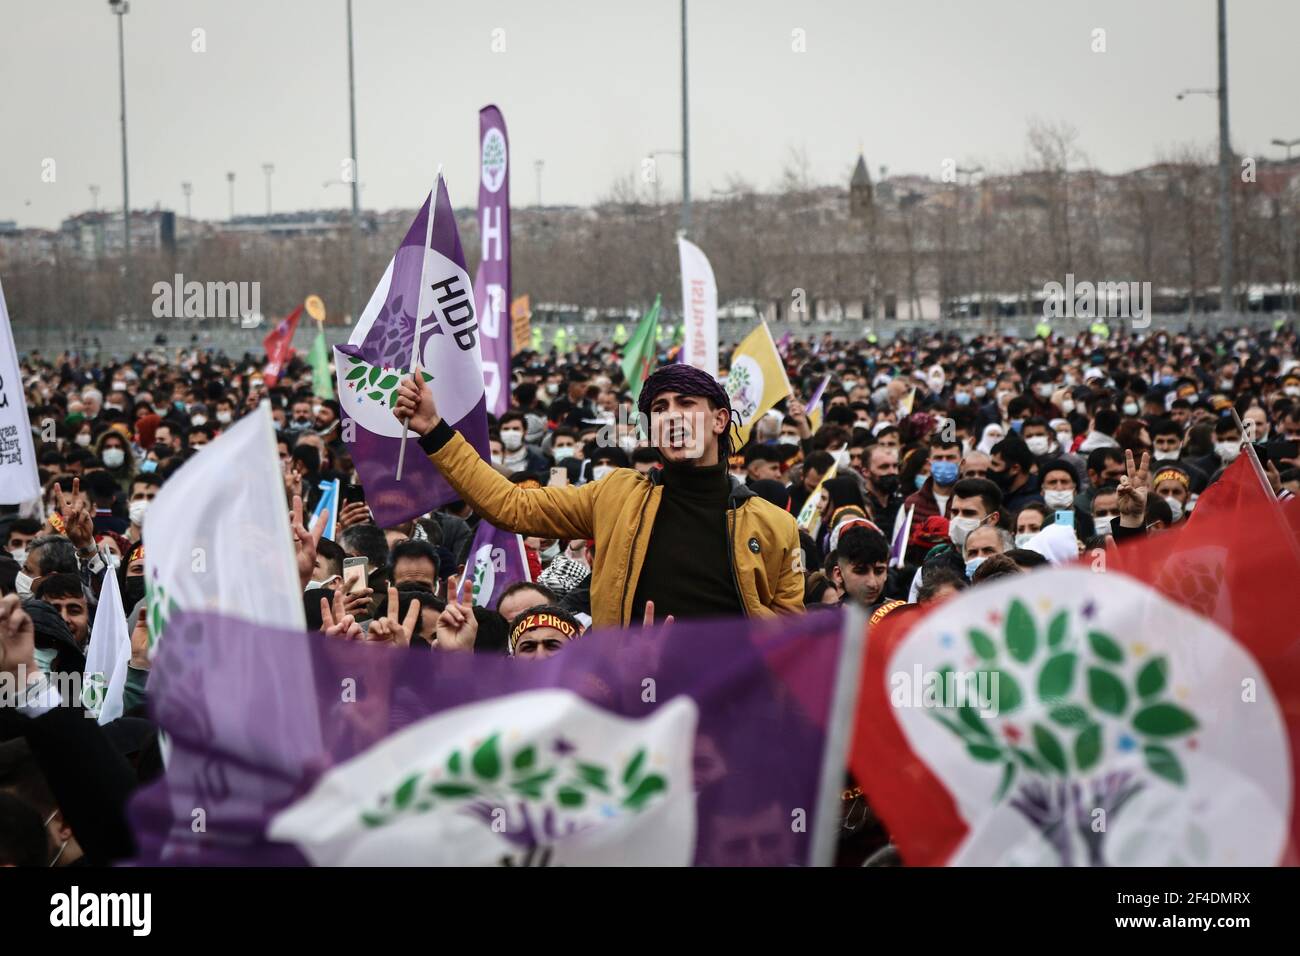 Ein junger Mann ruft während der Feier Slogans mit der Fahne der Demokratischen Partei der Völker in der Hand.Newroz stammt aus Persien in der religiösen Tradition des Zoroastrismus. Es gilt als das wichtigste Fest in der kurdischen Kultur, das die Ankunft des Frühlings und des neuen Jahres feiert. Dieses Fest ist zu einer Feier der kurdischen Identität und zu einem Symbol für die Revolution und den Kampf der Kurden im Laufe der Geschichte geworden. Stockfoto